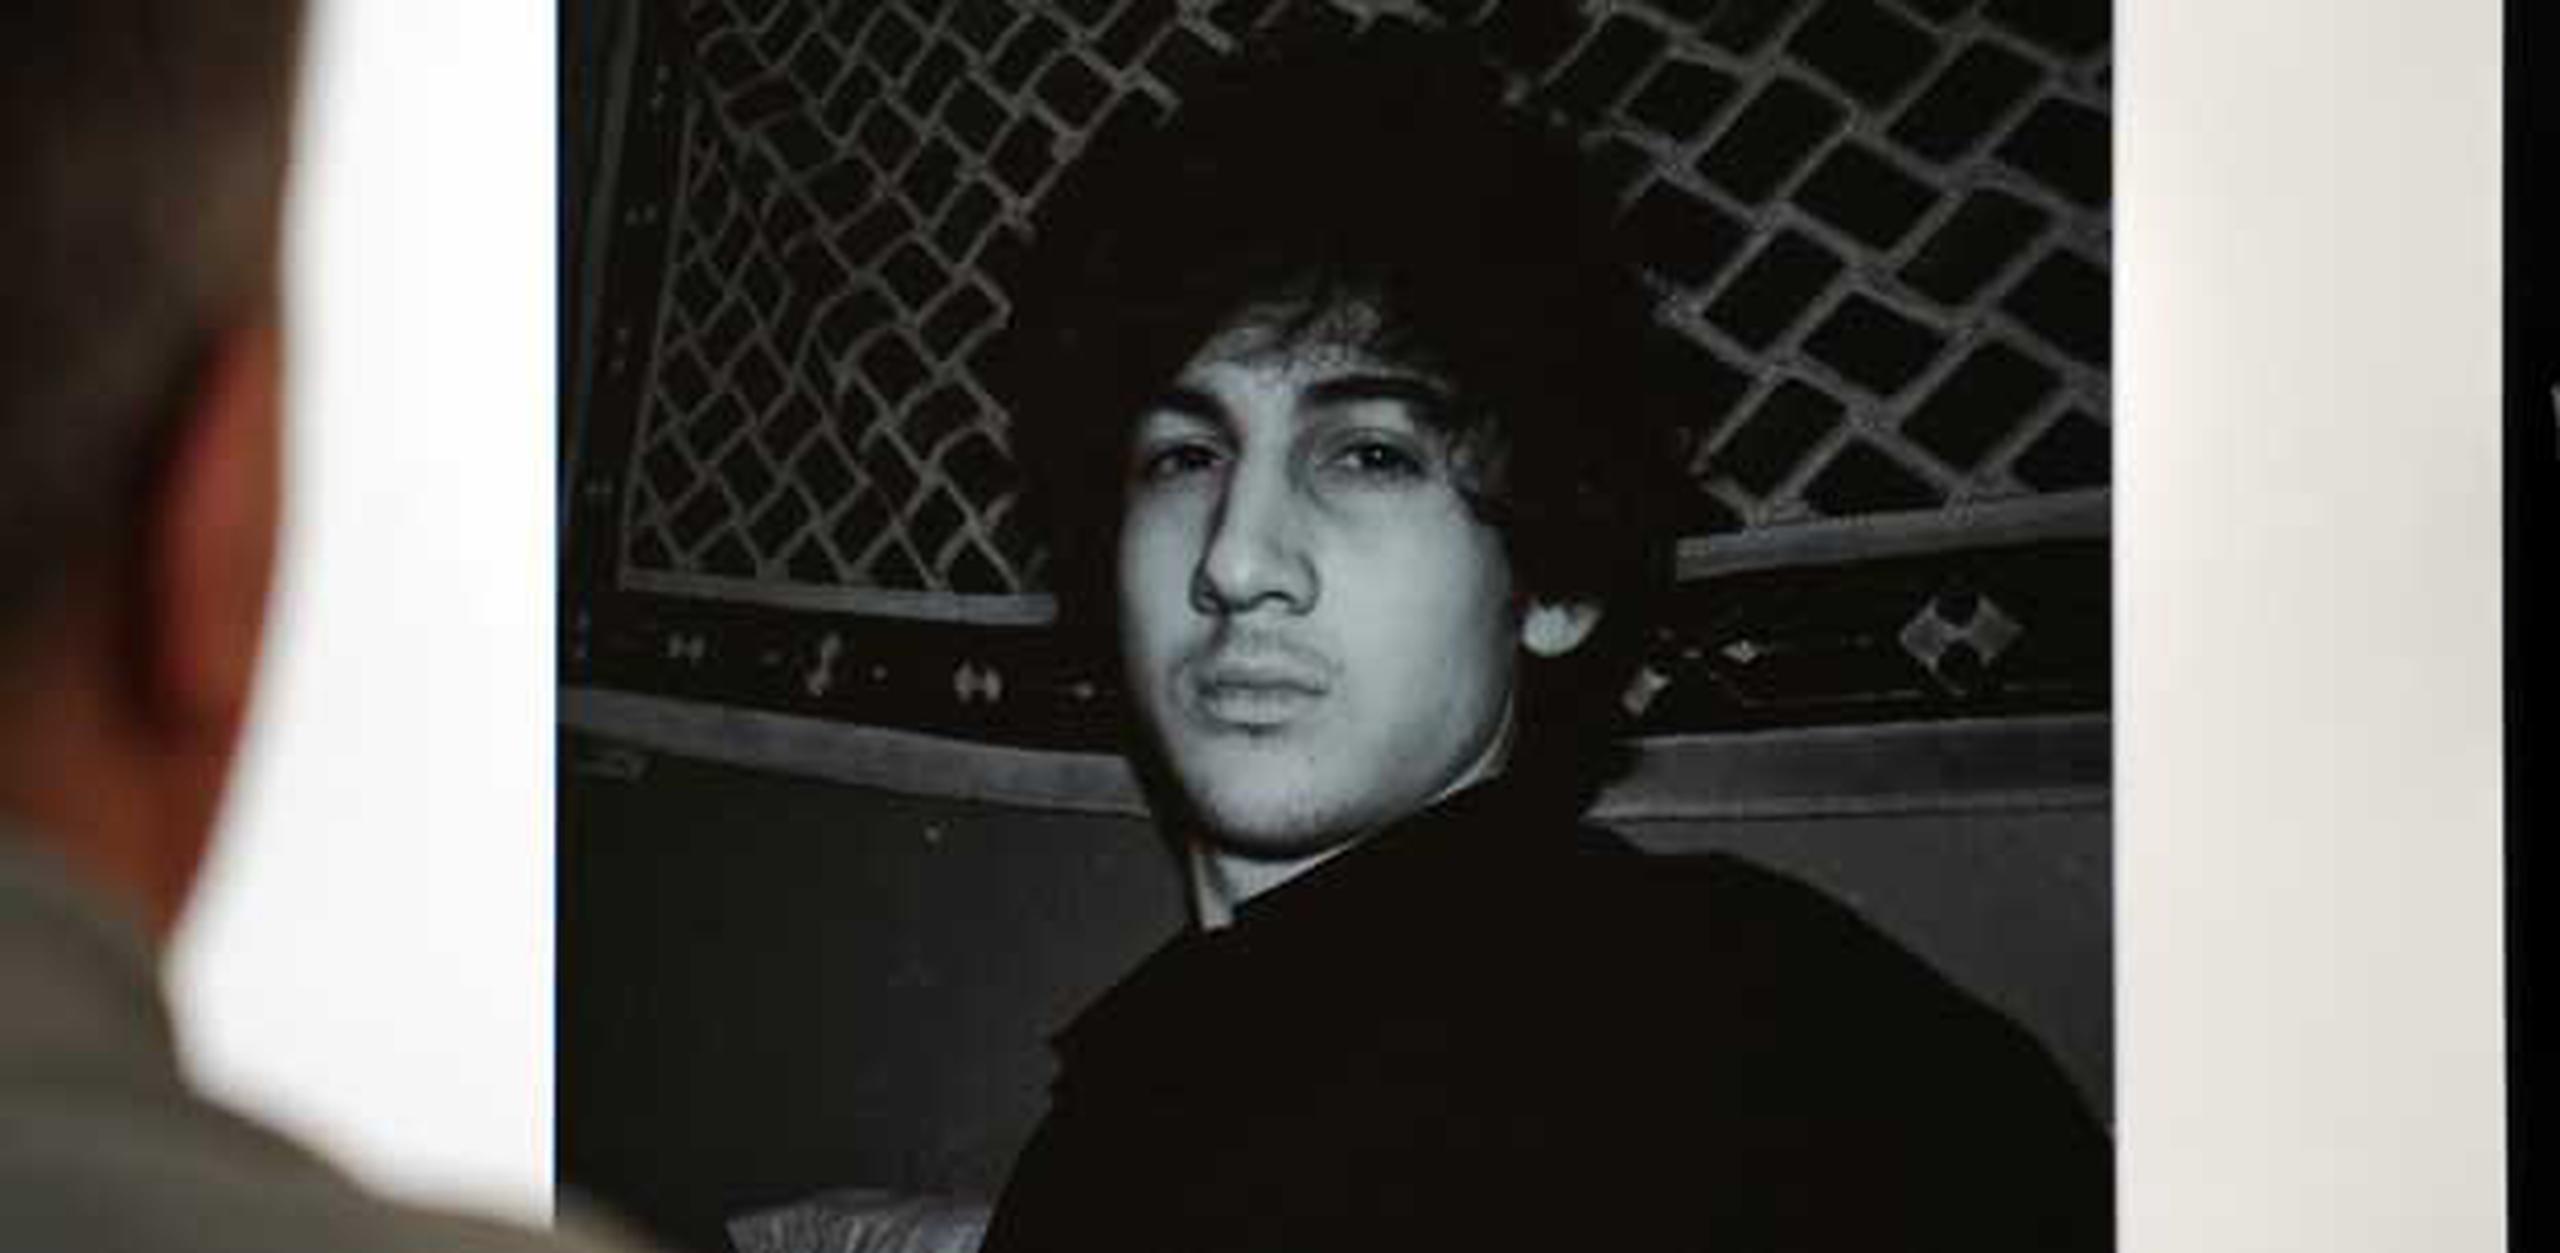 Una nueva foto de Dzhokhar A. Tsarnaev, el jovesn sospechoso por el atentado en Boston que permanece prófugo, fue revelada. (AFP)